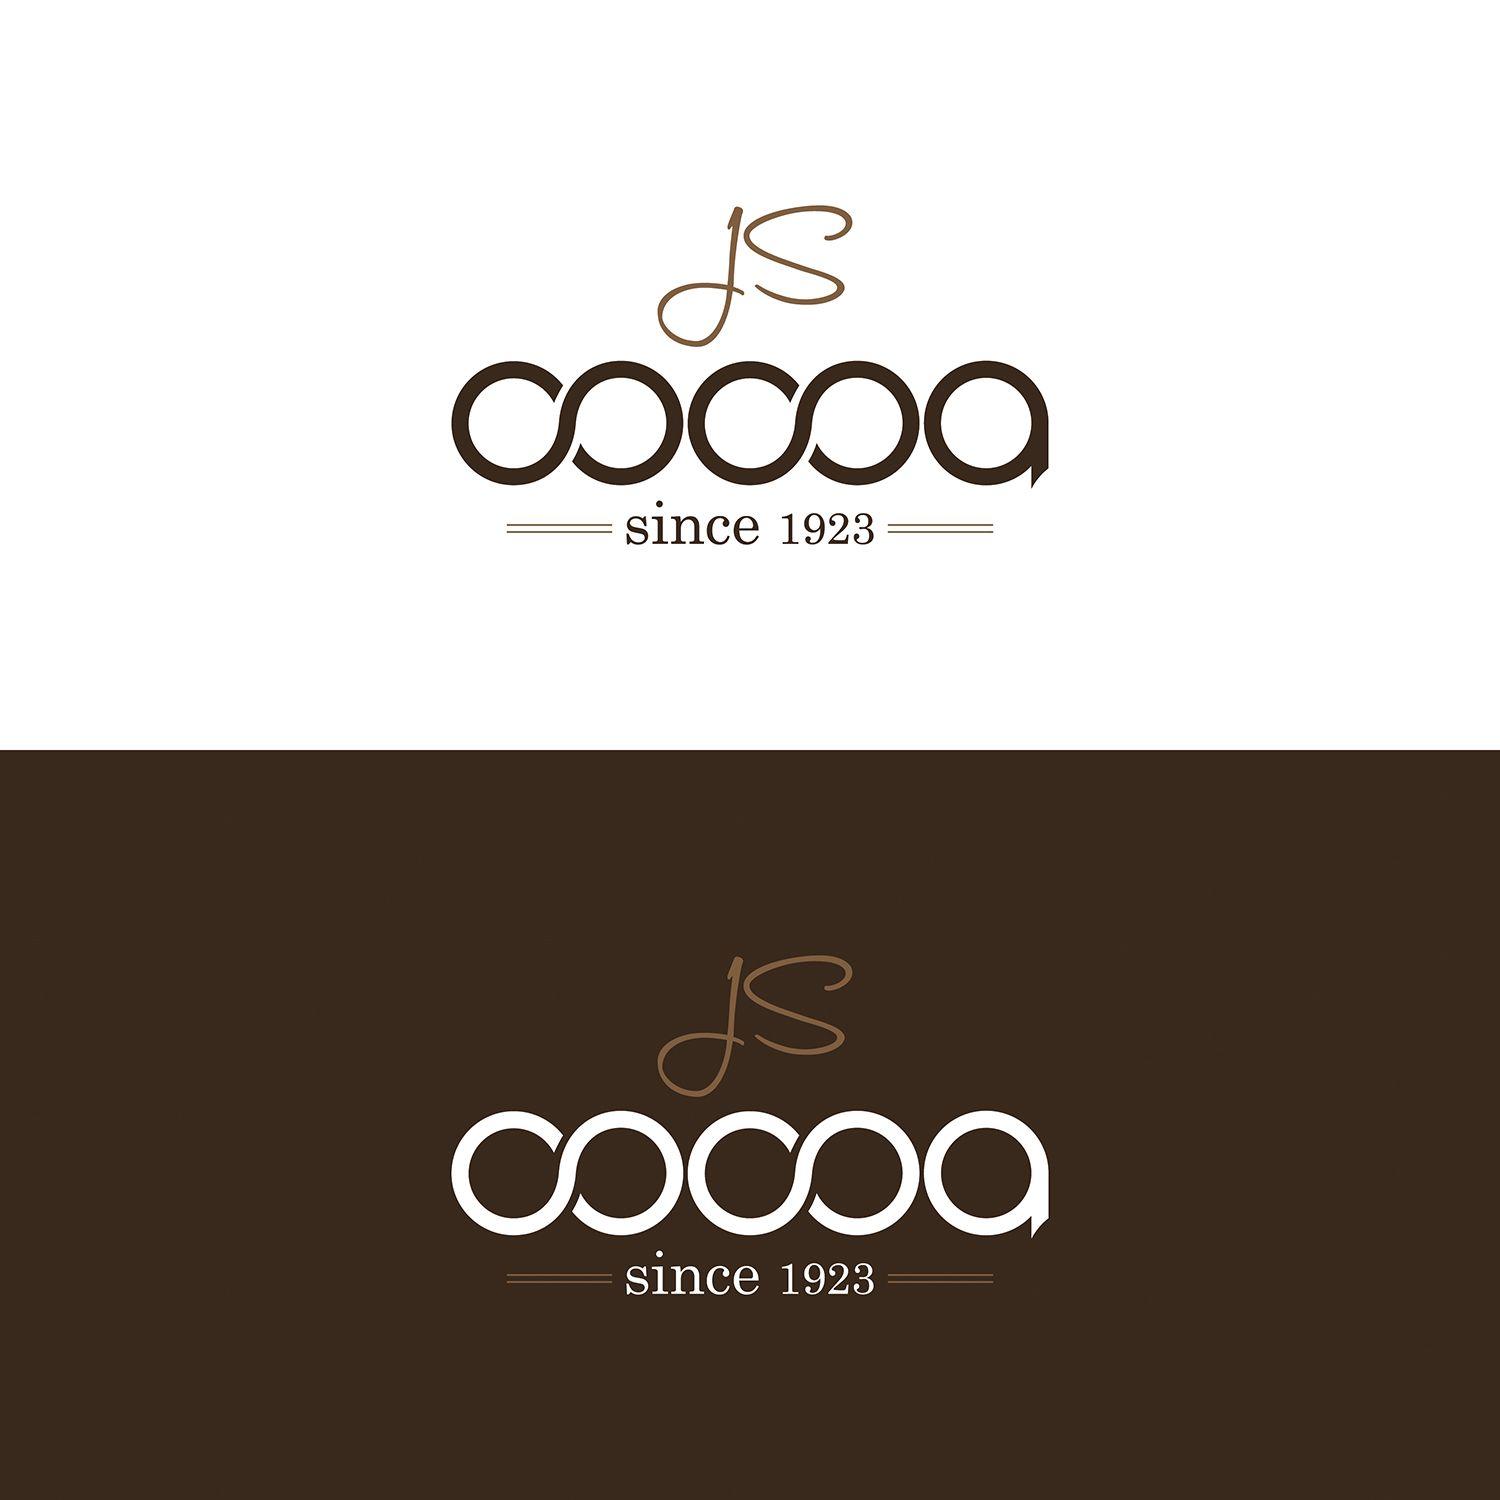 Cocoa Logo - Professional, Masculine, It Company Logo Design for J S Cocoa since